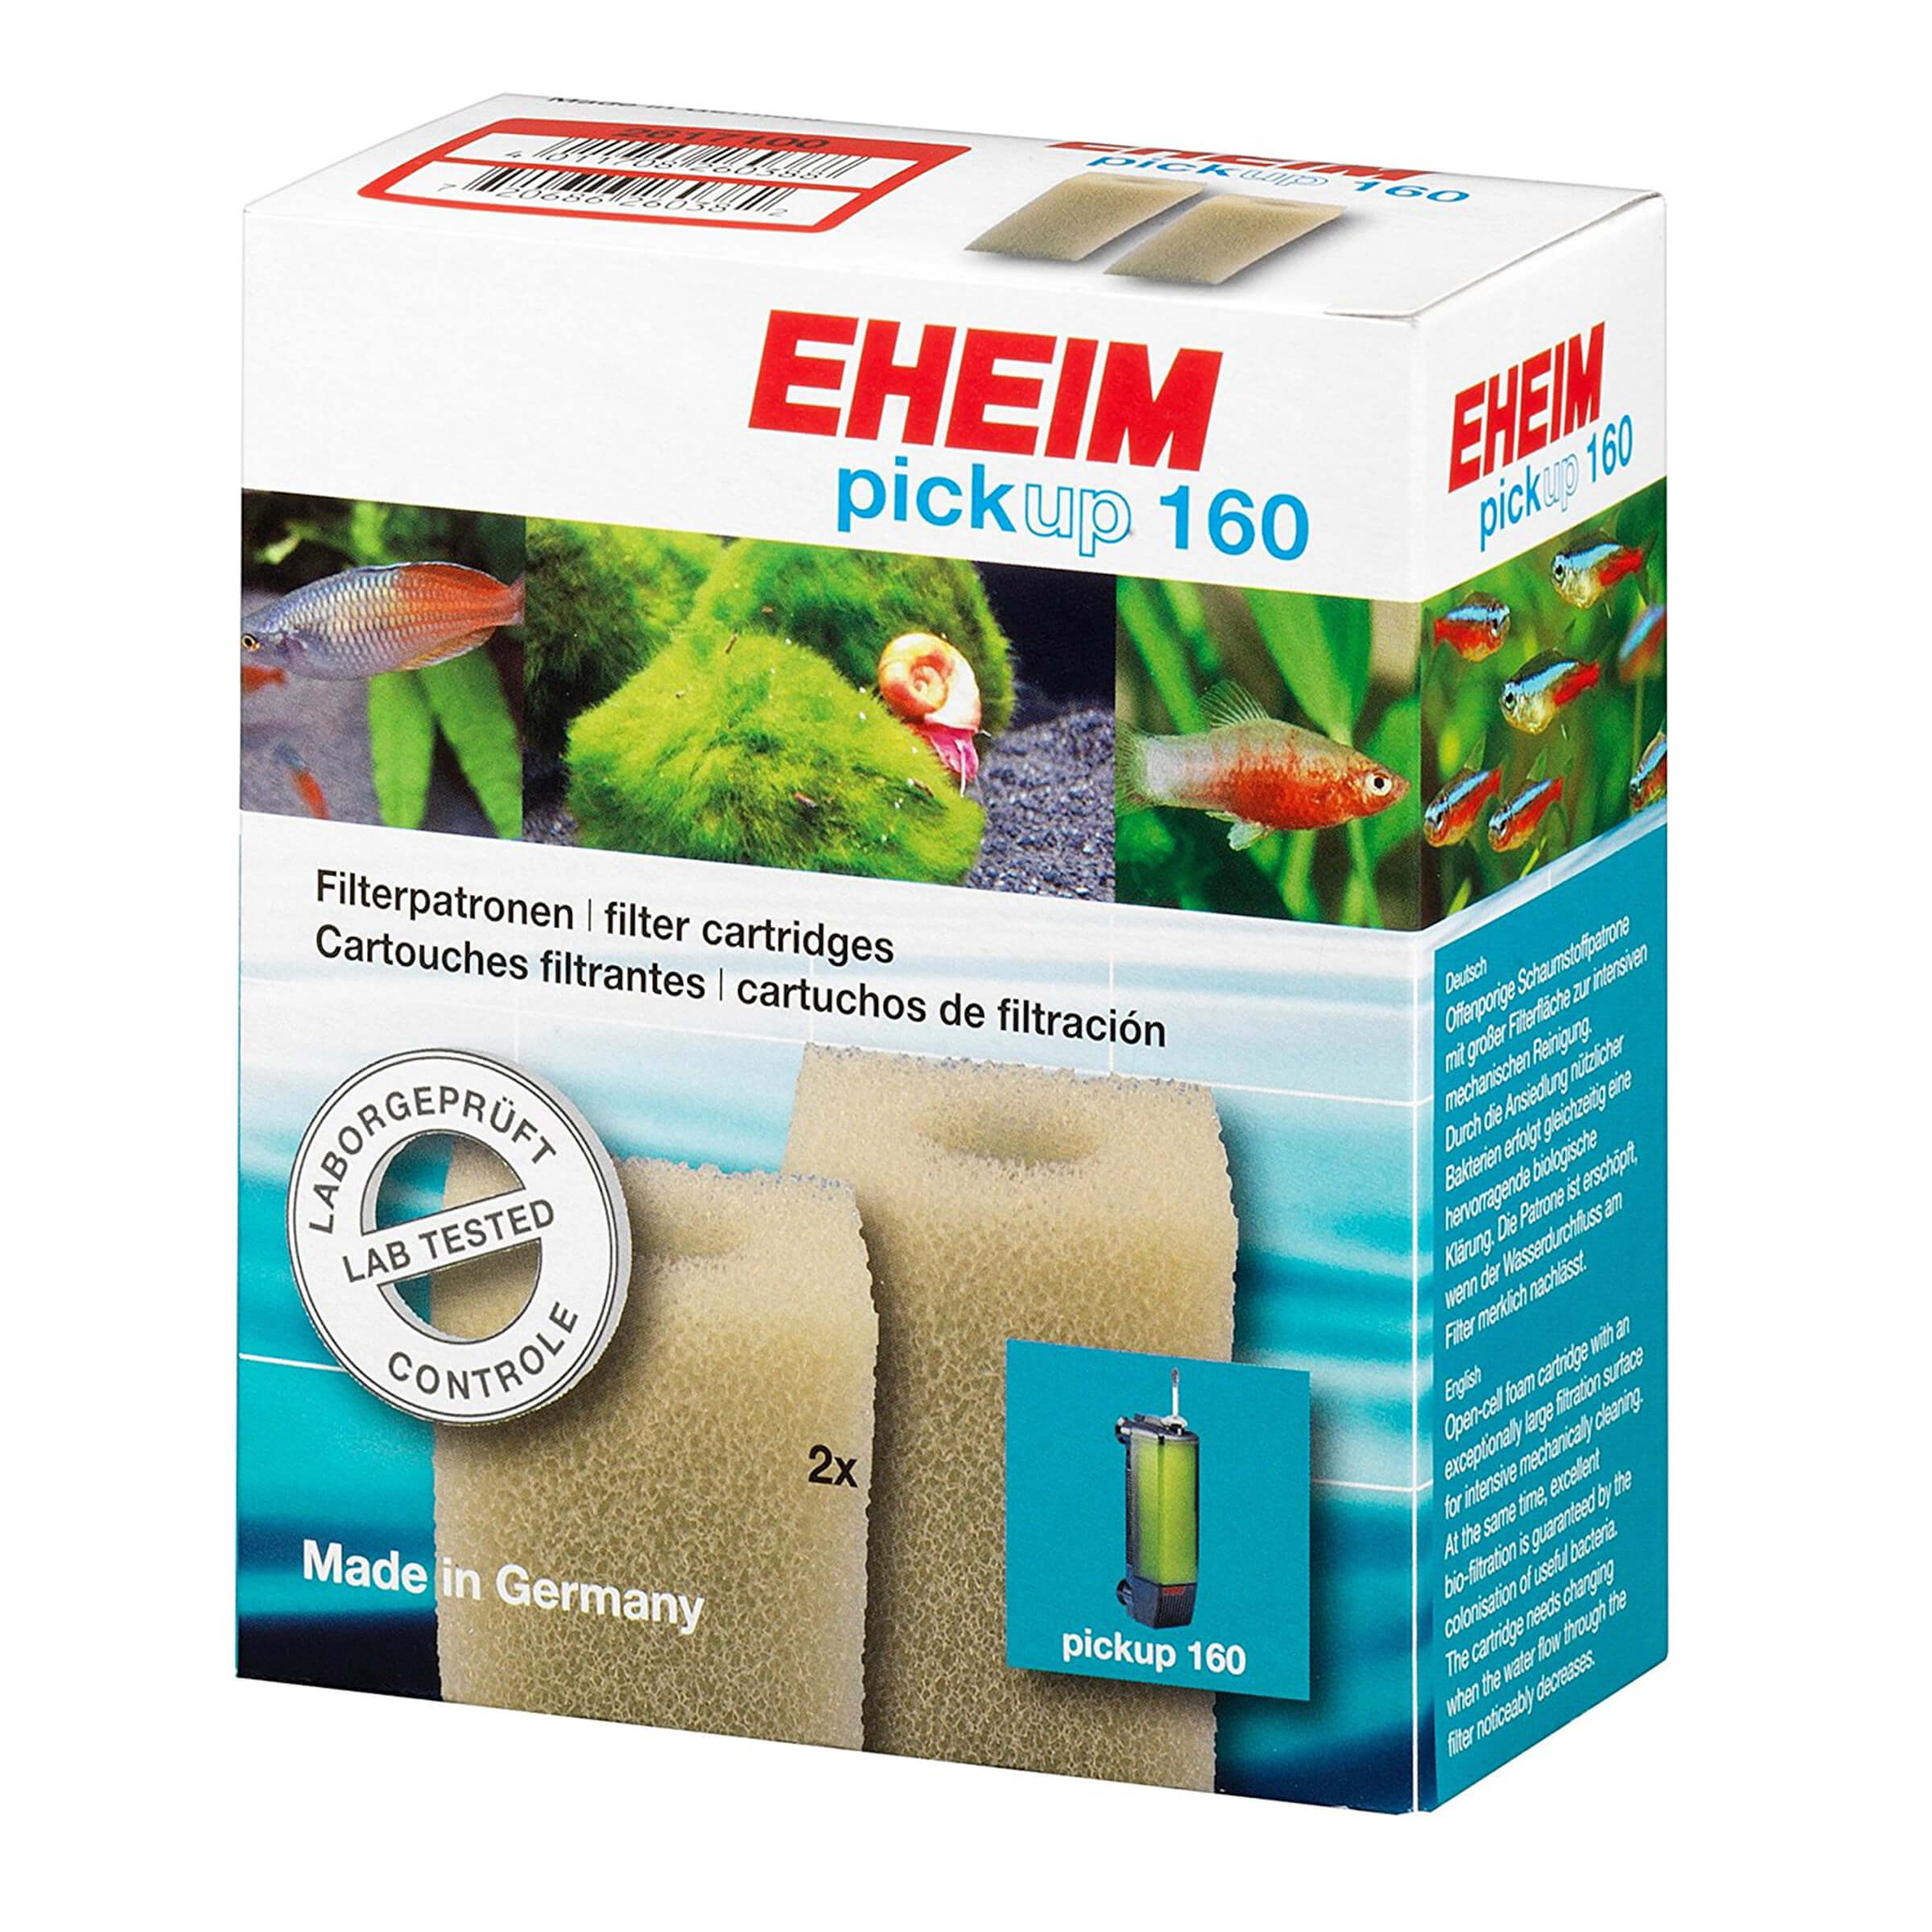 EHEIM Filterpatrone 2010 2Stk. Filtermaterial zu Pickup 160